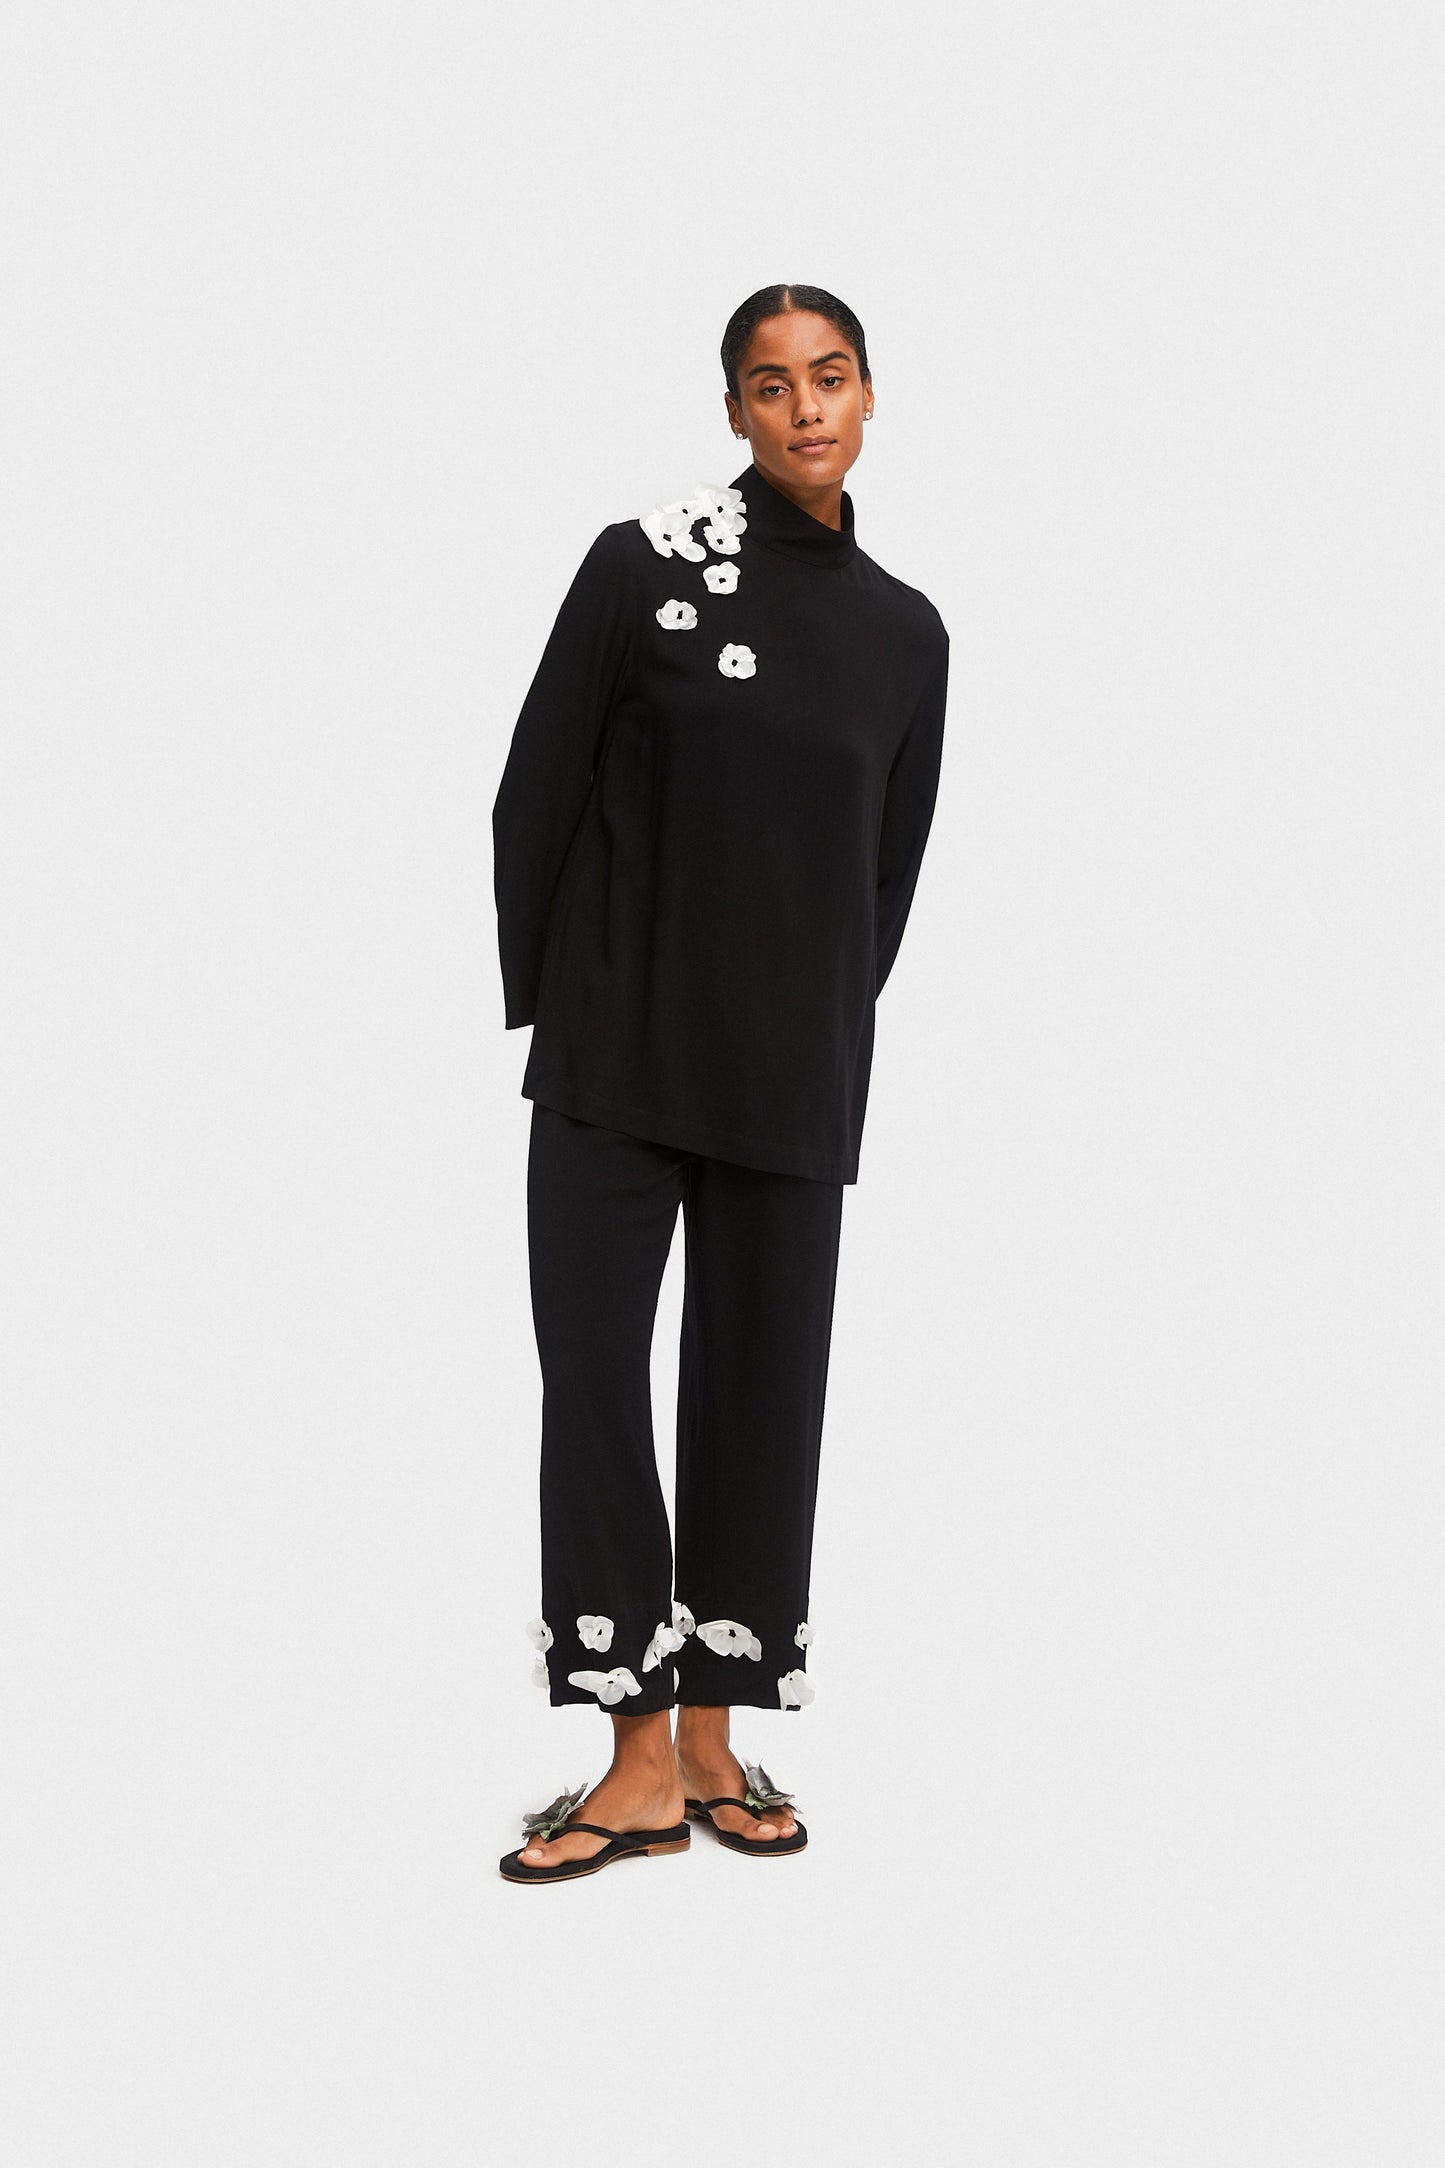 The Bloom Black Tie Pajama Set with Pants in Black